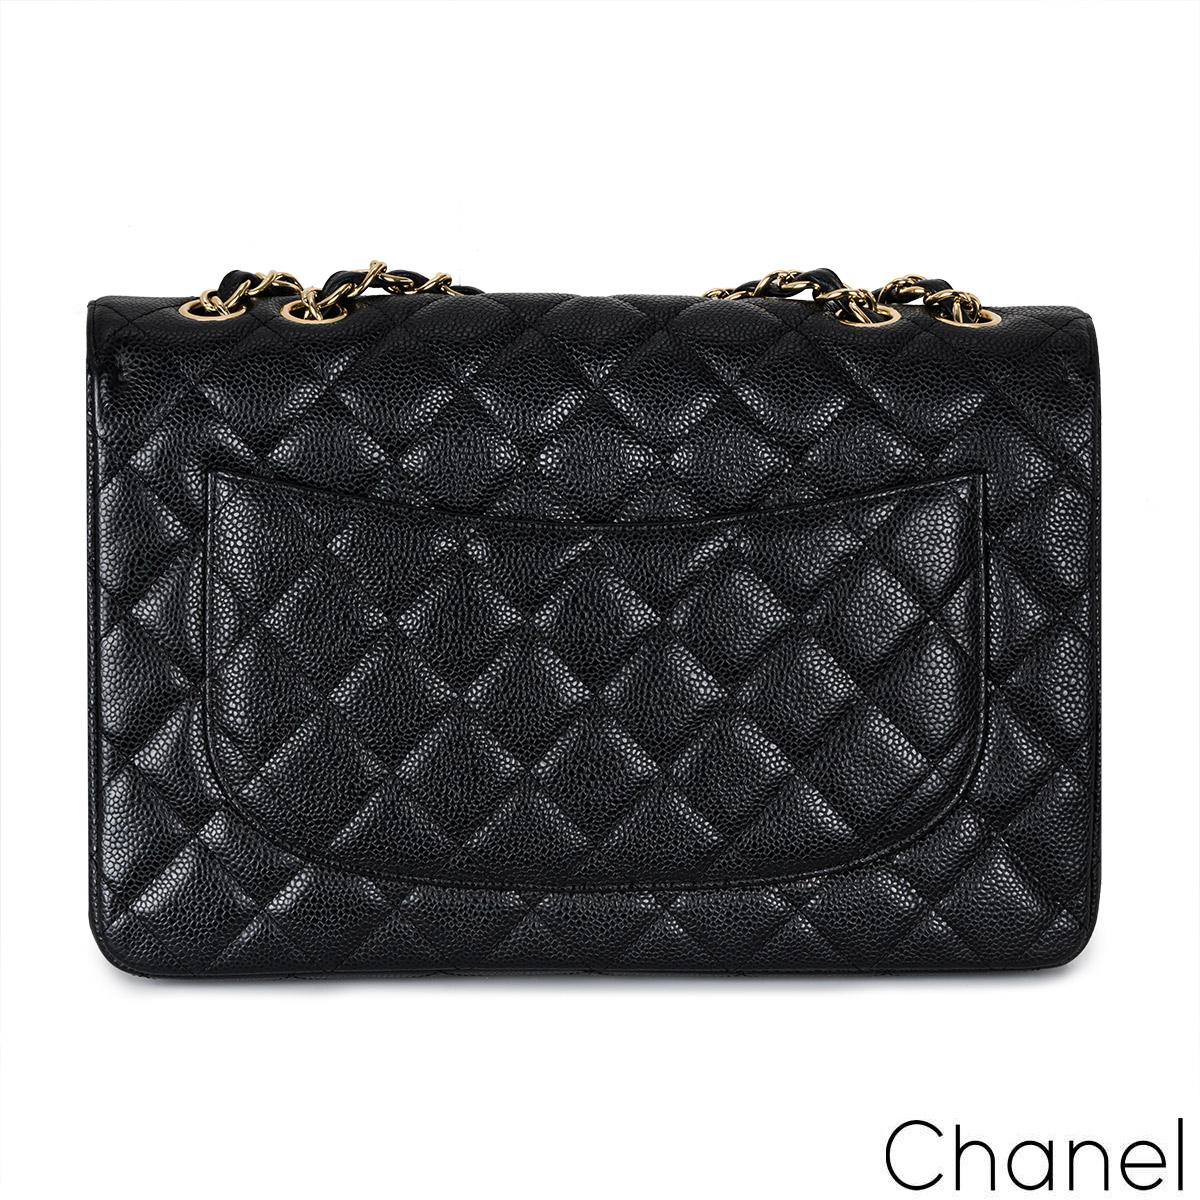 Eine klassische Chanel Jumbo Classic Single Flap Handtasche. Das Äußere dieses Jumbo-Klassikers ist aus schwarzem, gestepptem Kaviarleder mit goldfarbenen Beschlägen gefertigt. Sie verfügt über eine Frontklappe mit dem charakteristischen